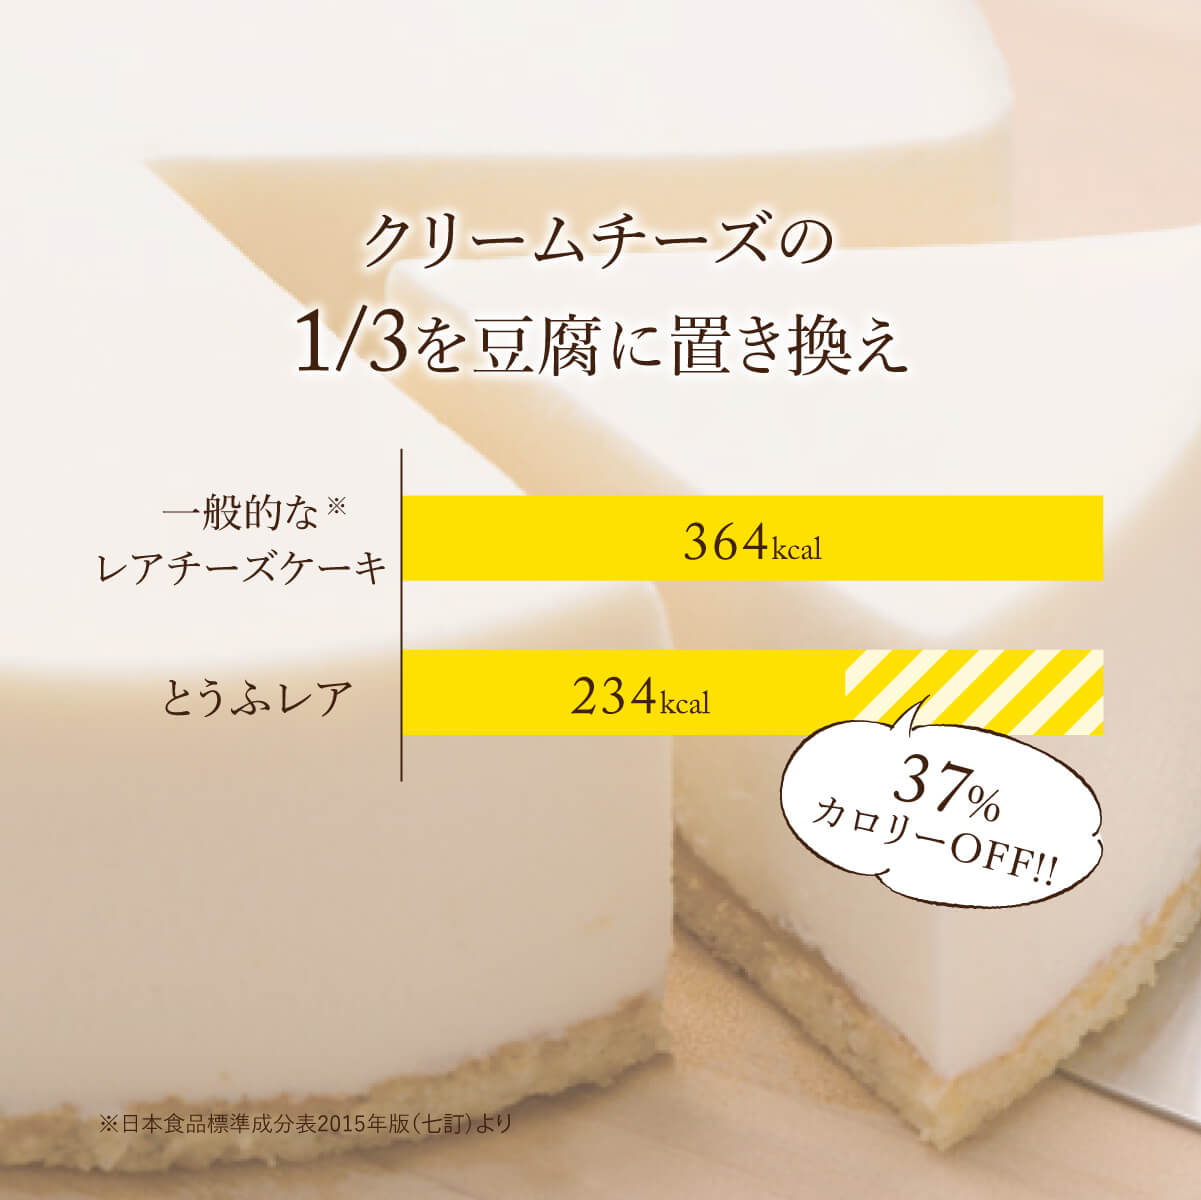 クリームチーズの1/3を豆腐に置き換え。一般的な※レアチーズケーキ 364kcal。とうふレア 234kcal。37%カロリーOFF！！※日本食品標準成分表2015年(七訂)より。